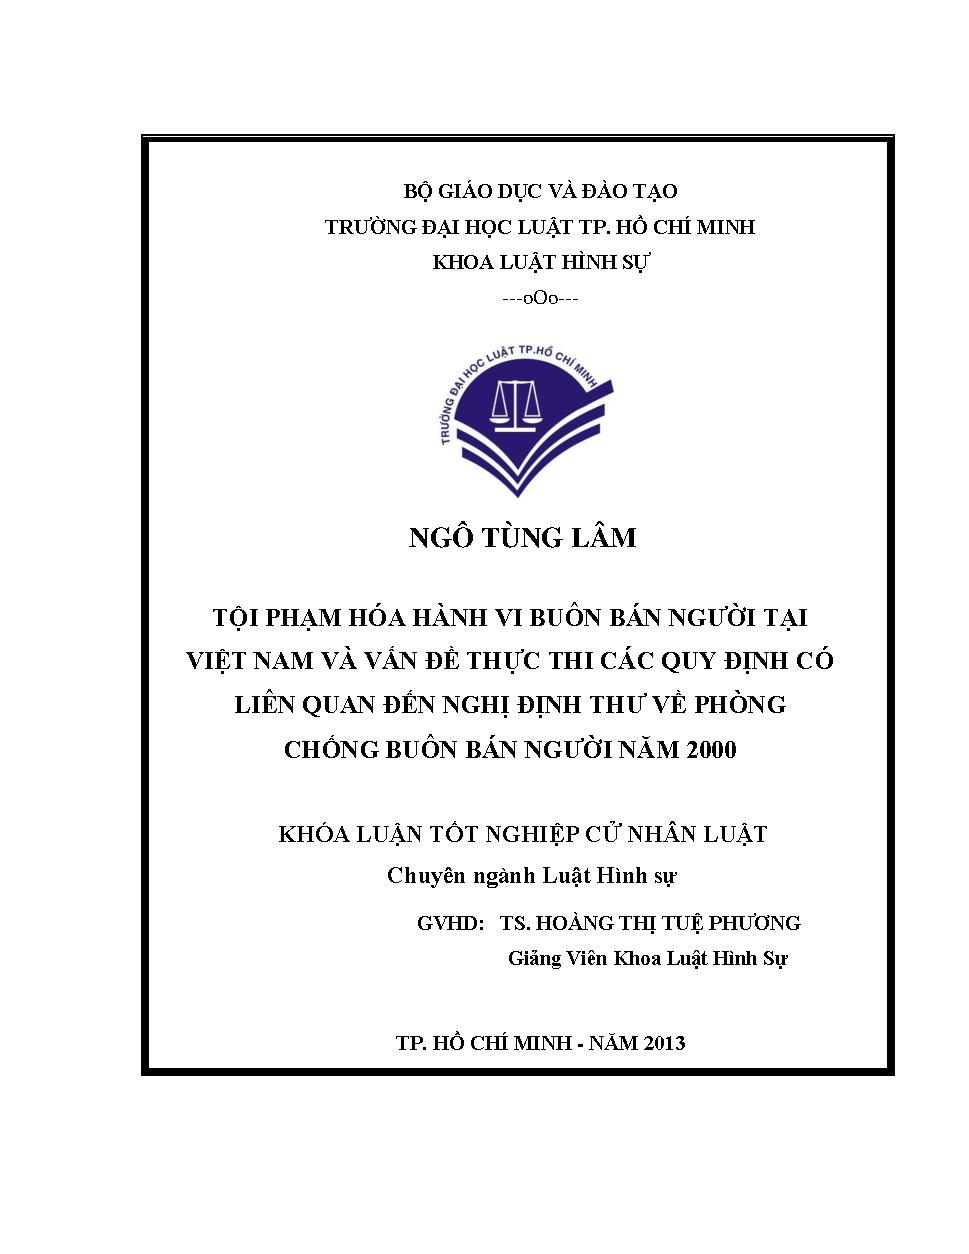 Tội phạm hóa hành vi buôn bán người tại Việt Nam và vấn đề thực thi các quy định có liên quan đến nghị định thư về phòng chống buôn bán người năm 2000